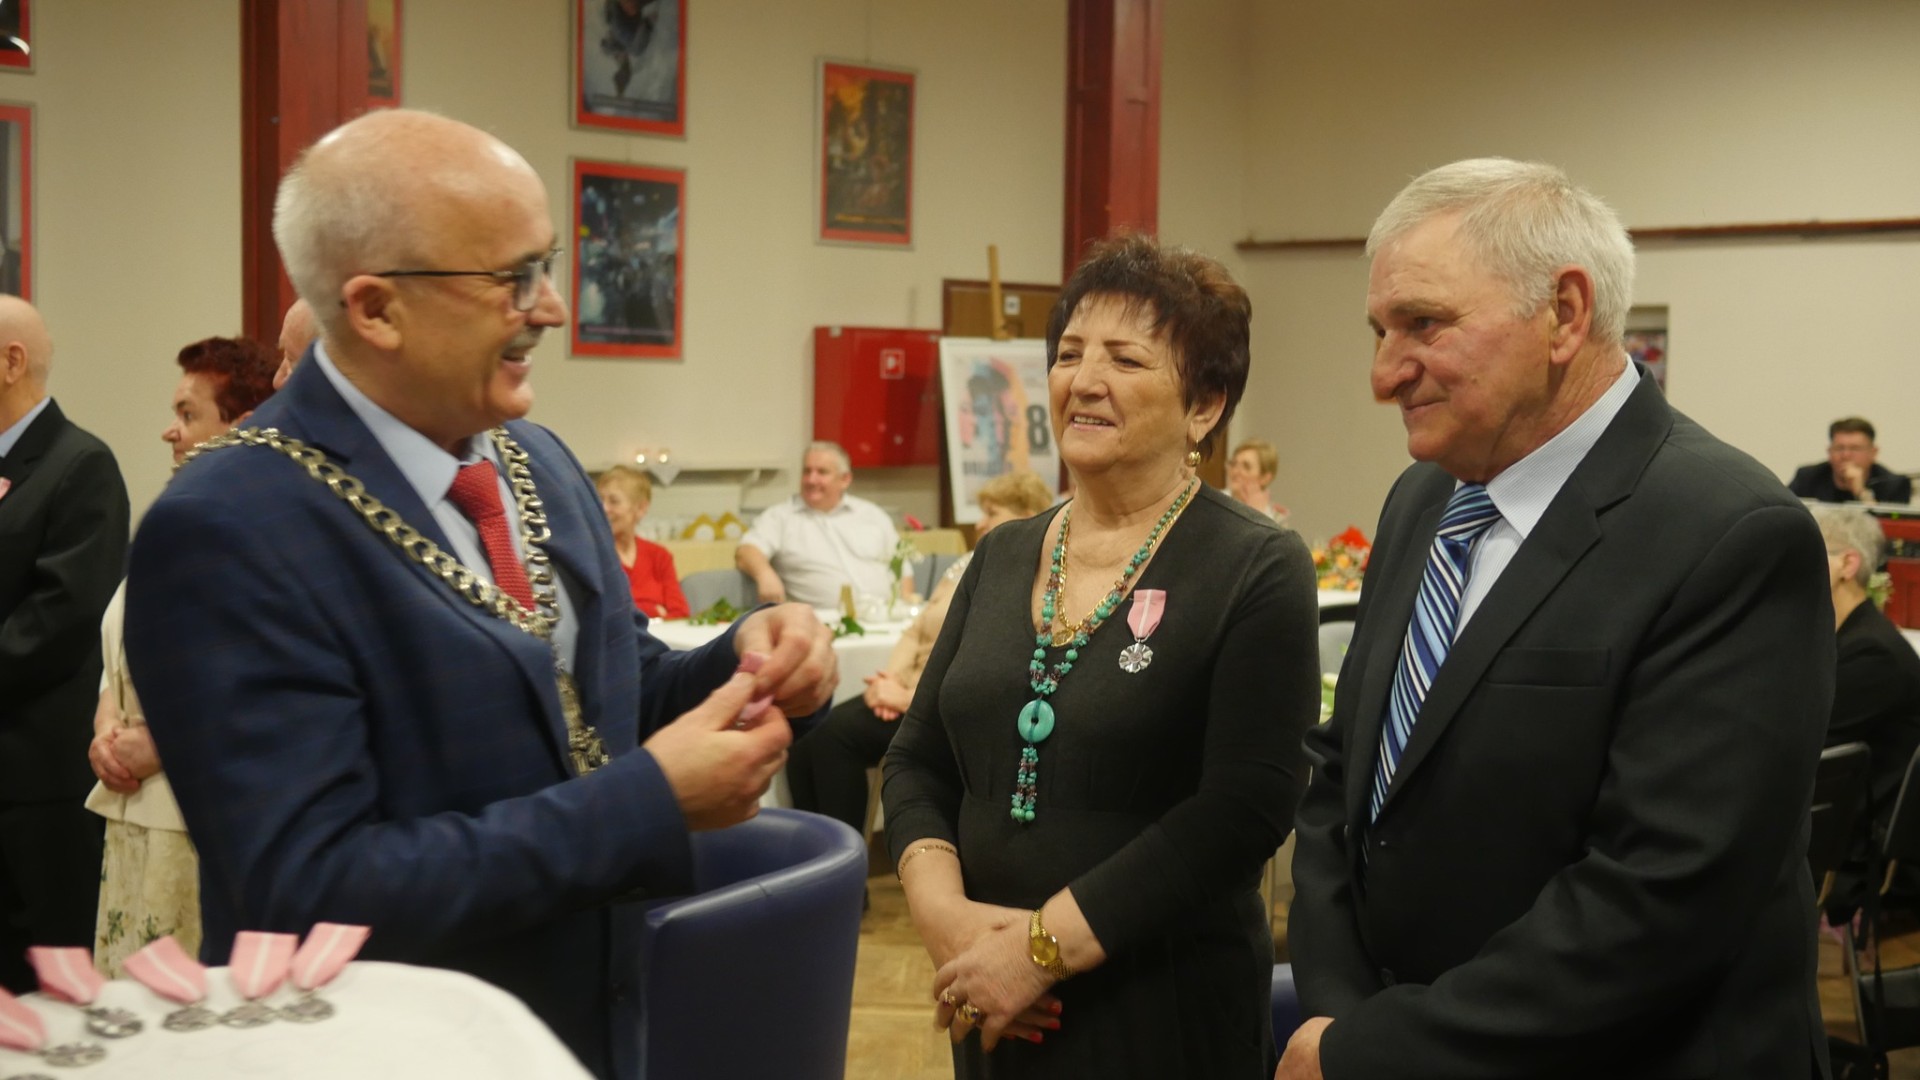 Złote gody: Dziesięć par uhonorowanych przez Burmistrza Kalisza Pomorskiego medalem za Długoletnie Pożycie Małżeńskie